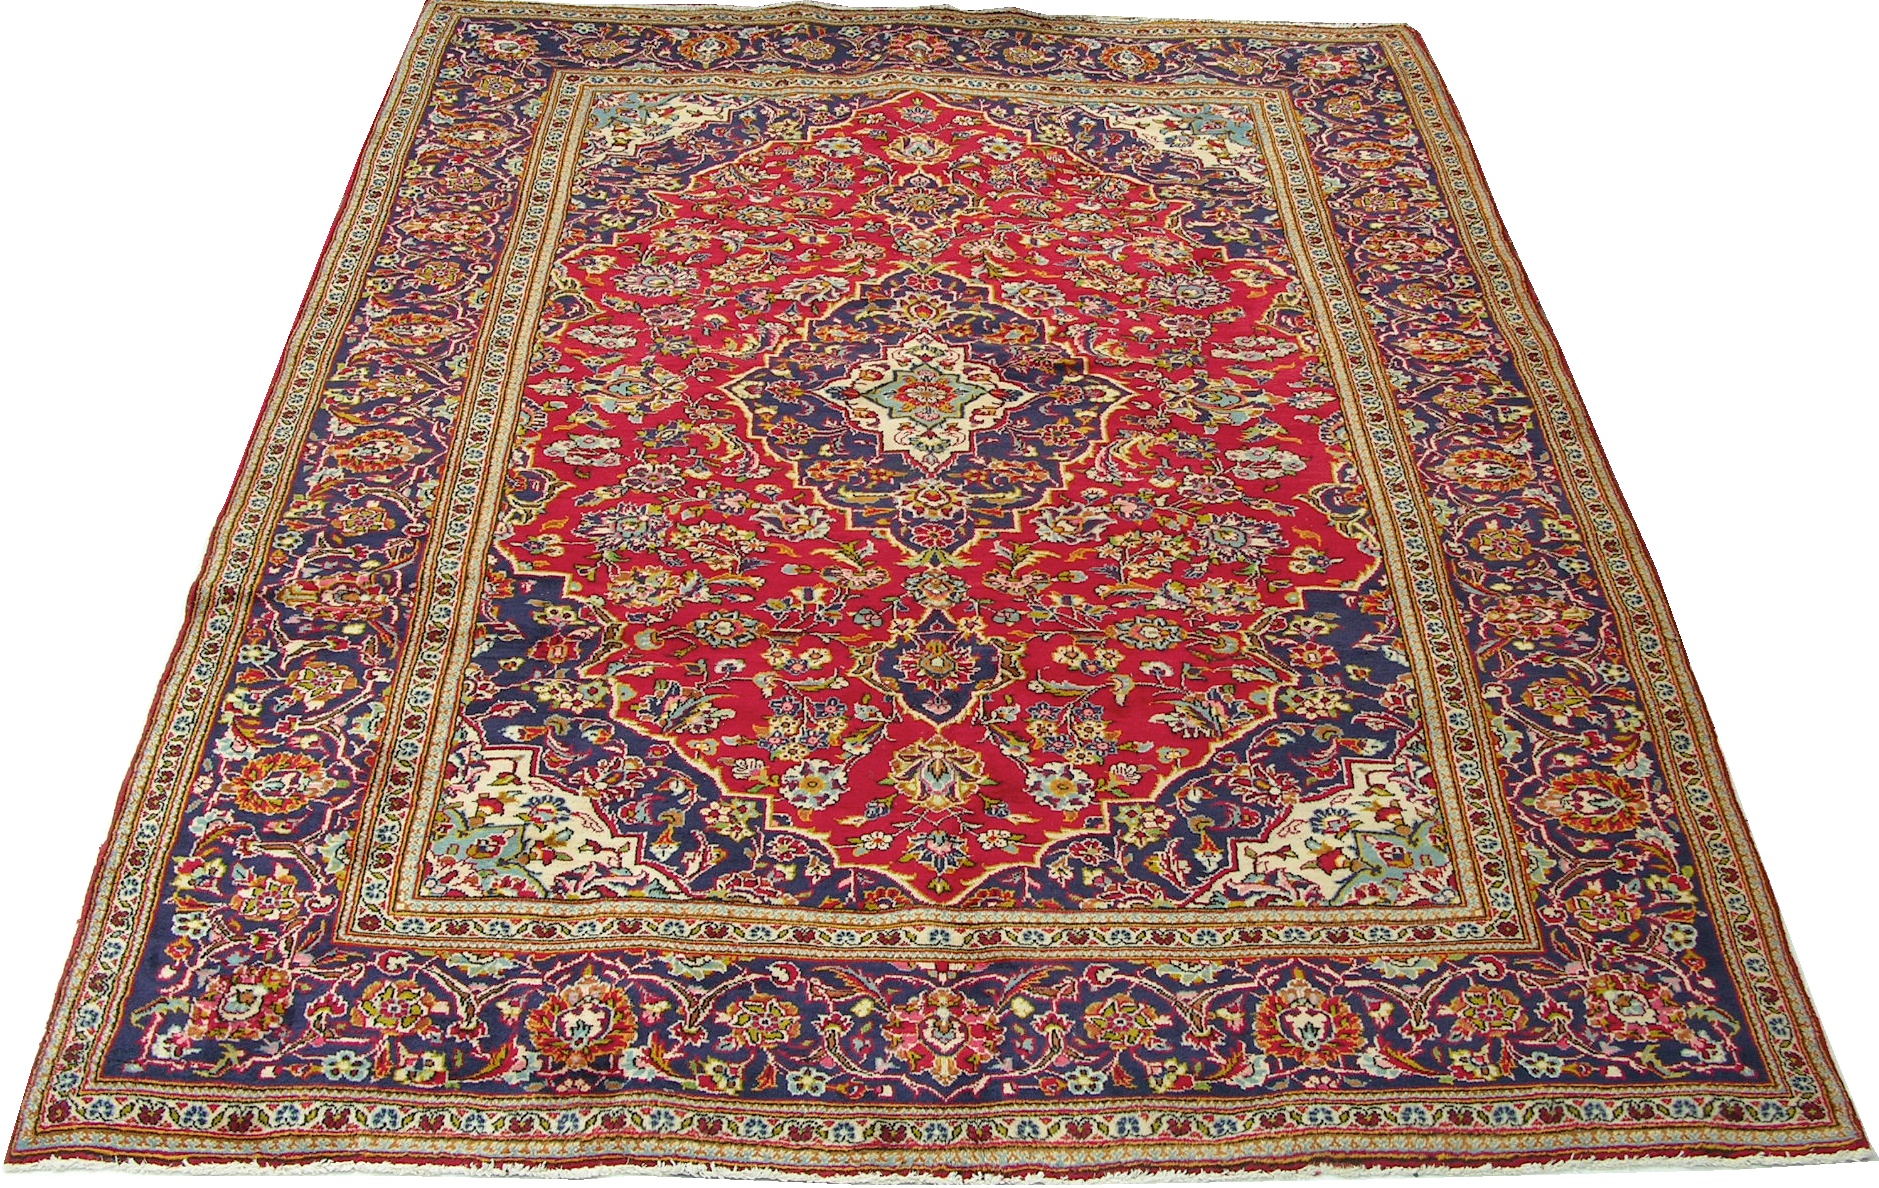 A Kashan Carpet, 03.02.07, Sold: $402.5